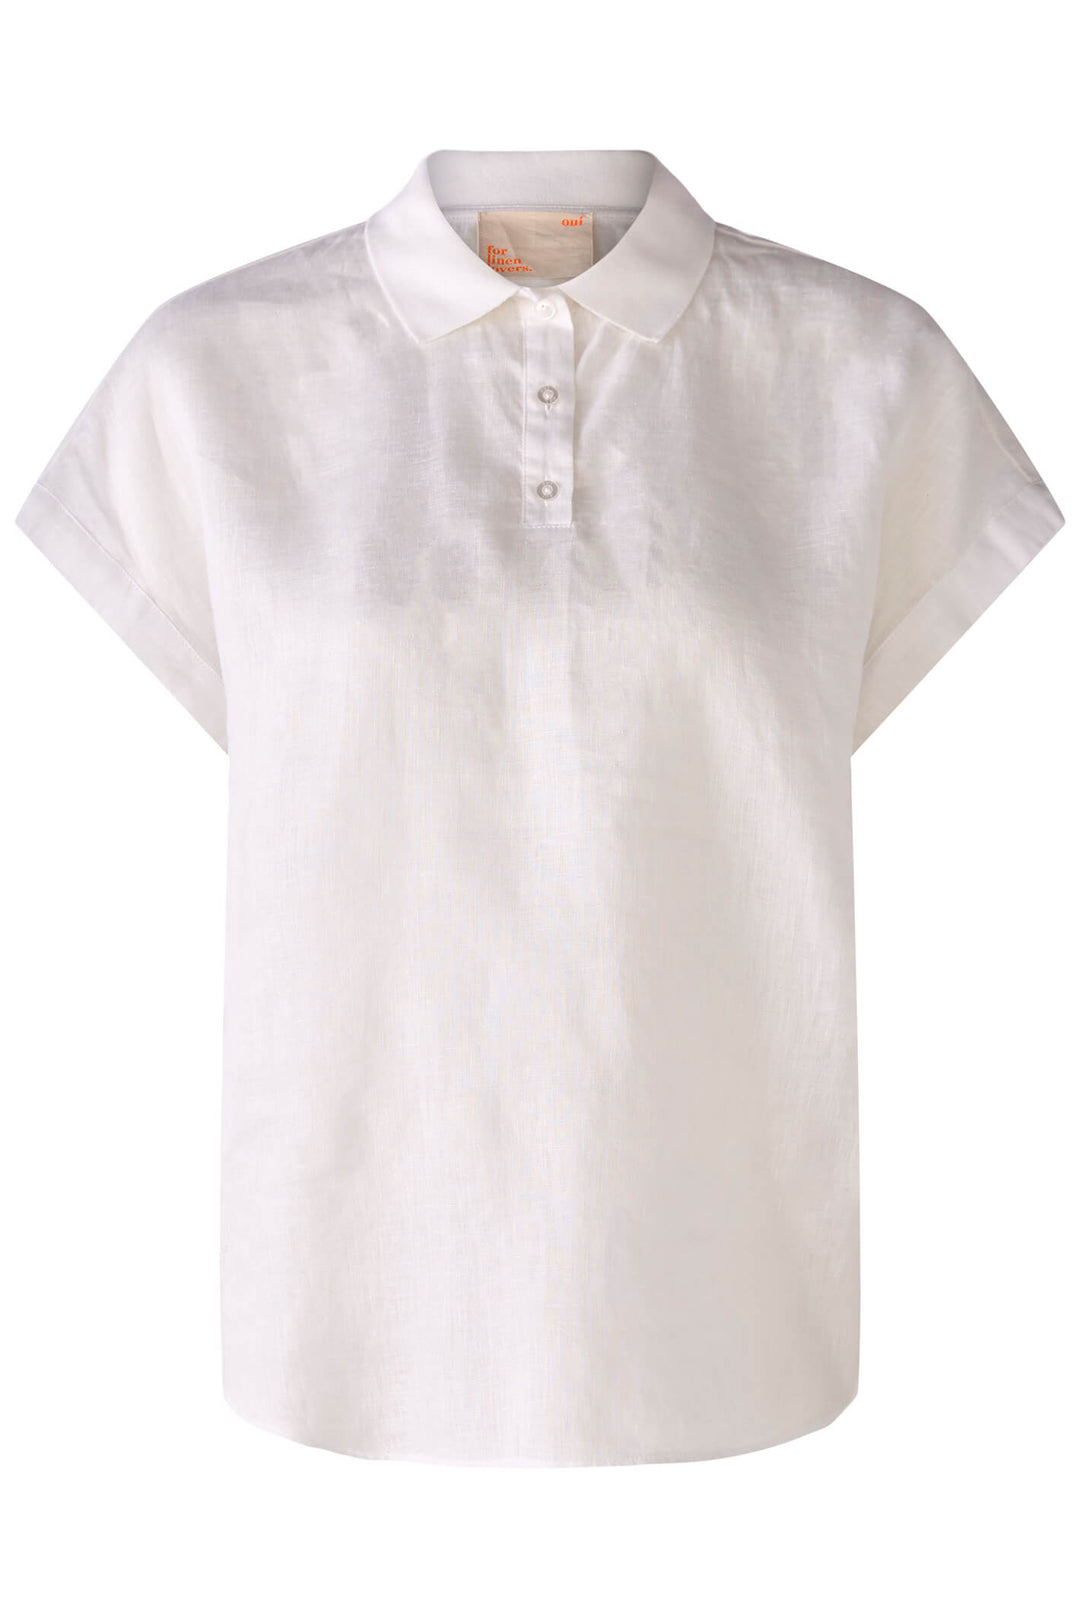 Oui 78899 Optic White Short Sleeve Blouse - Olivia Grace Fashion